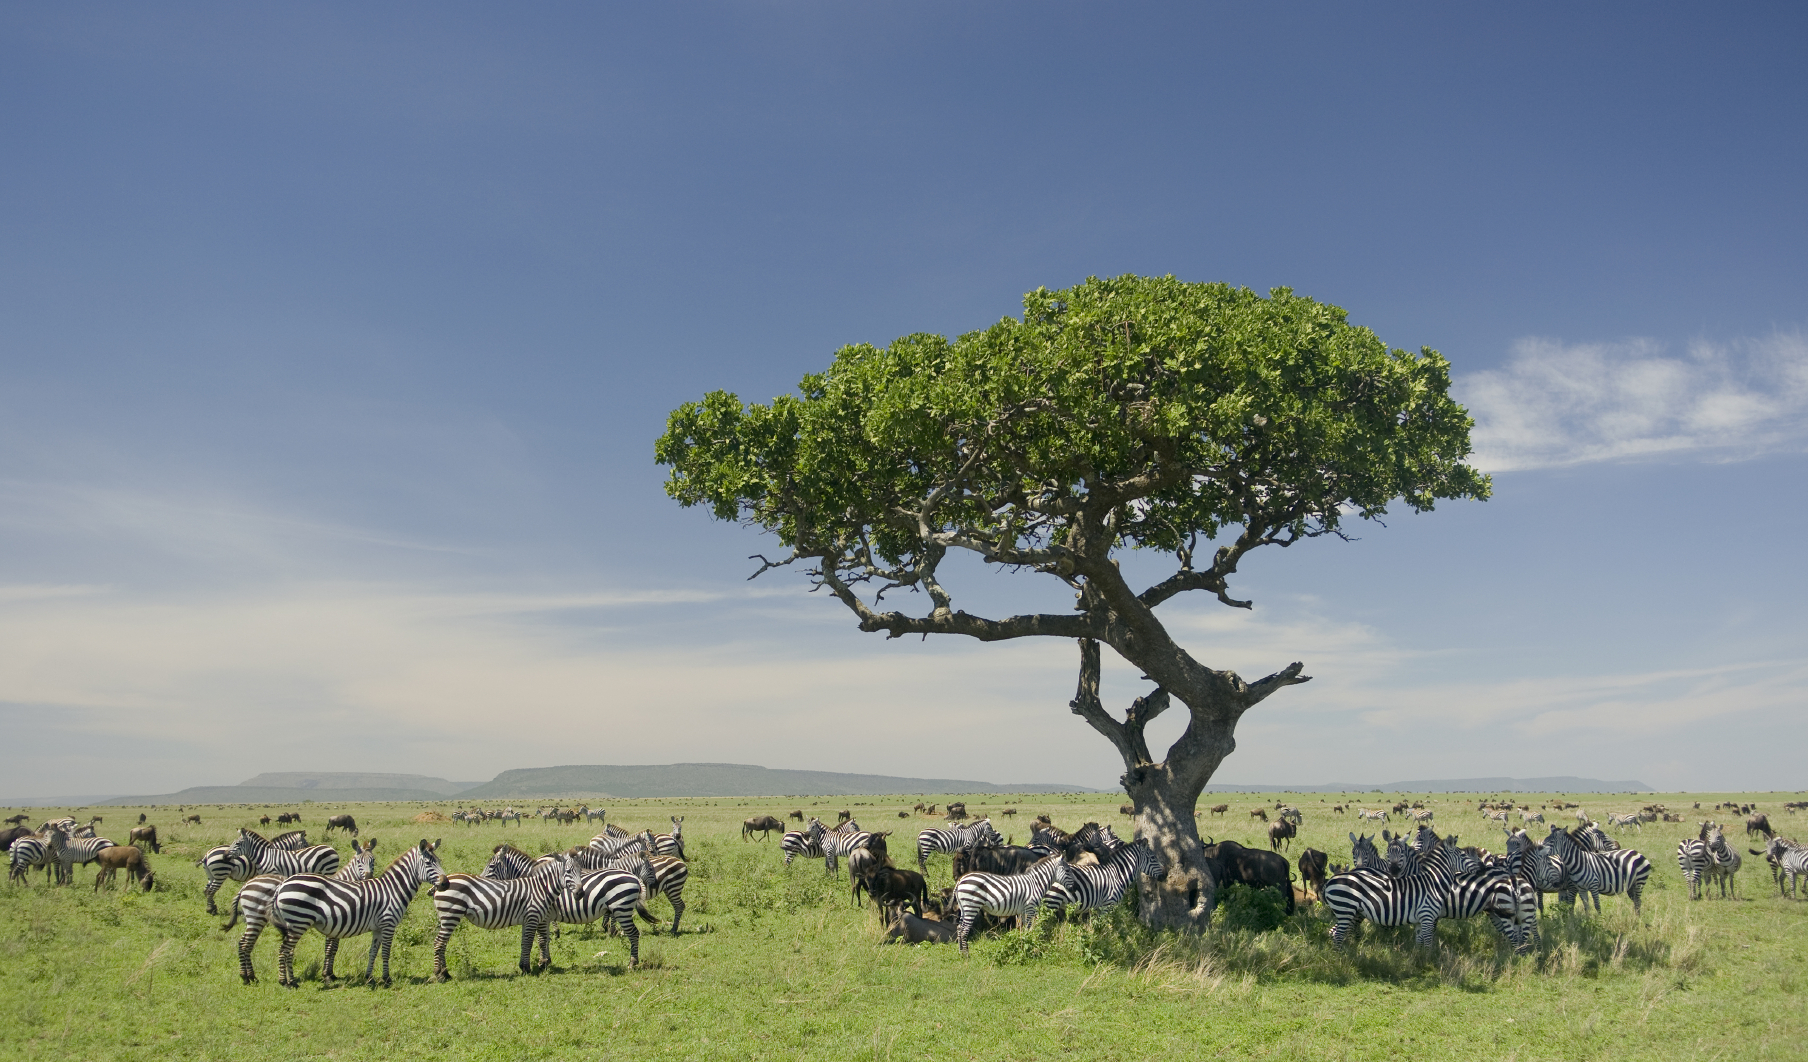 The serengeti in Tanzania